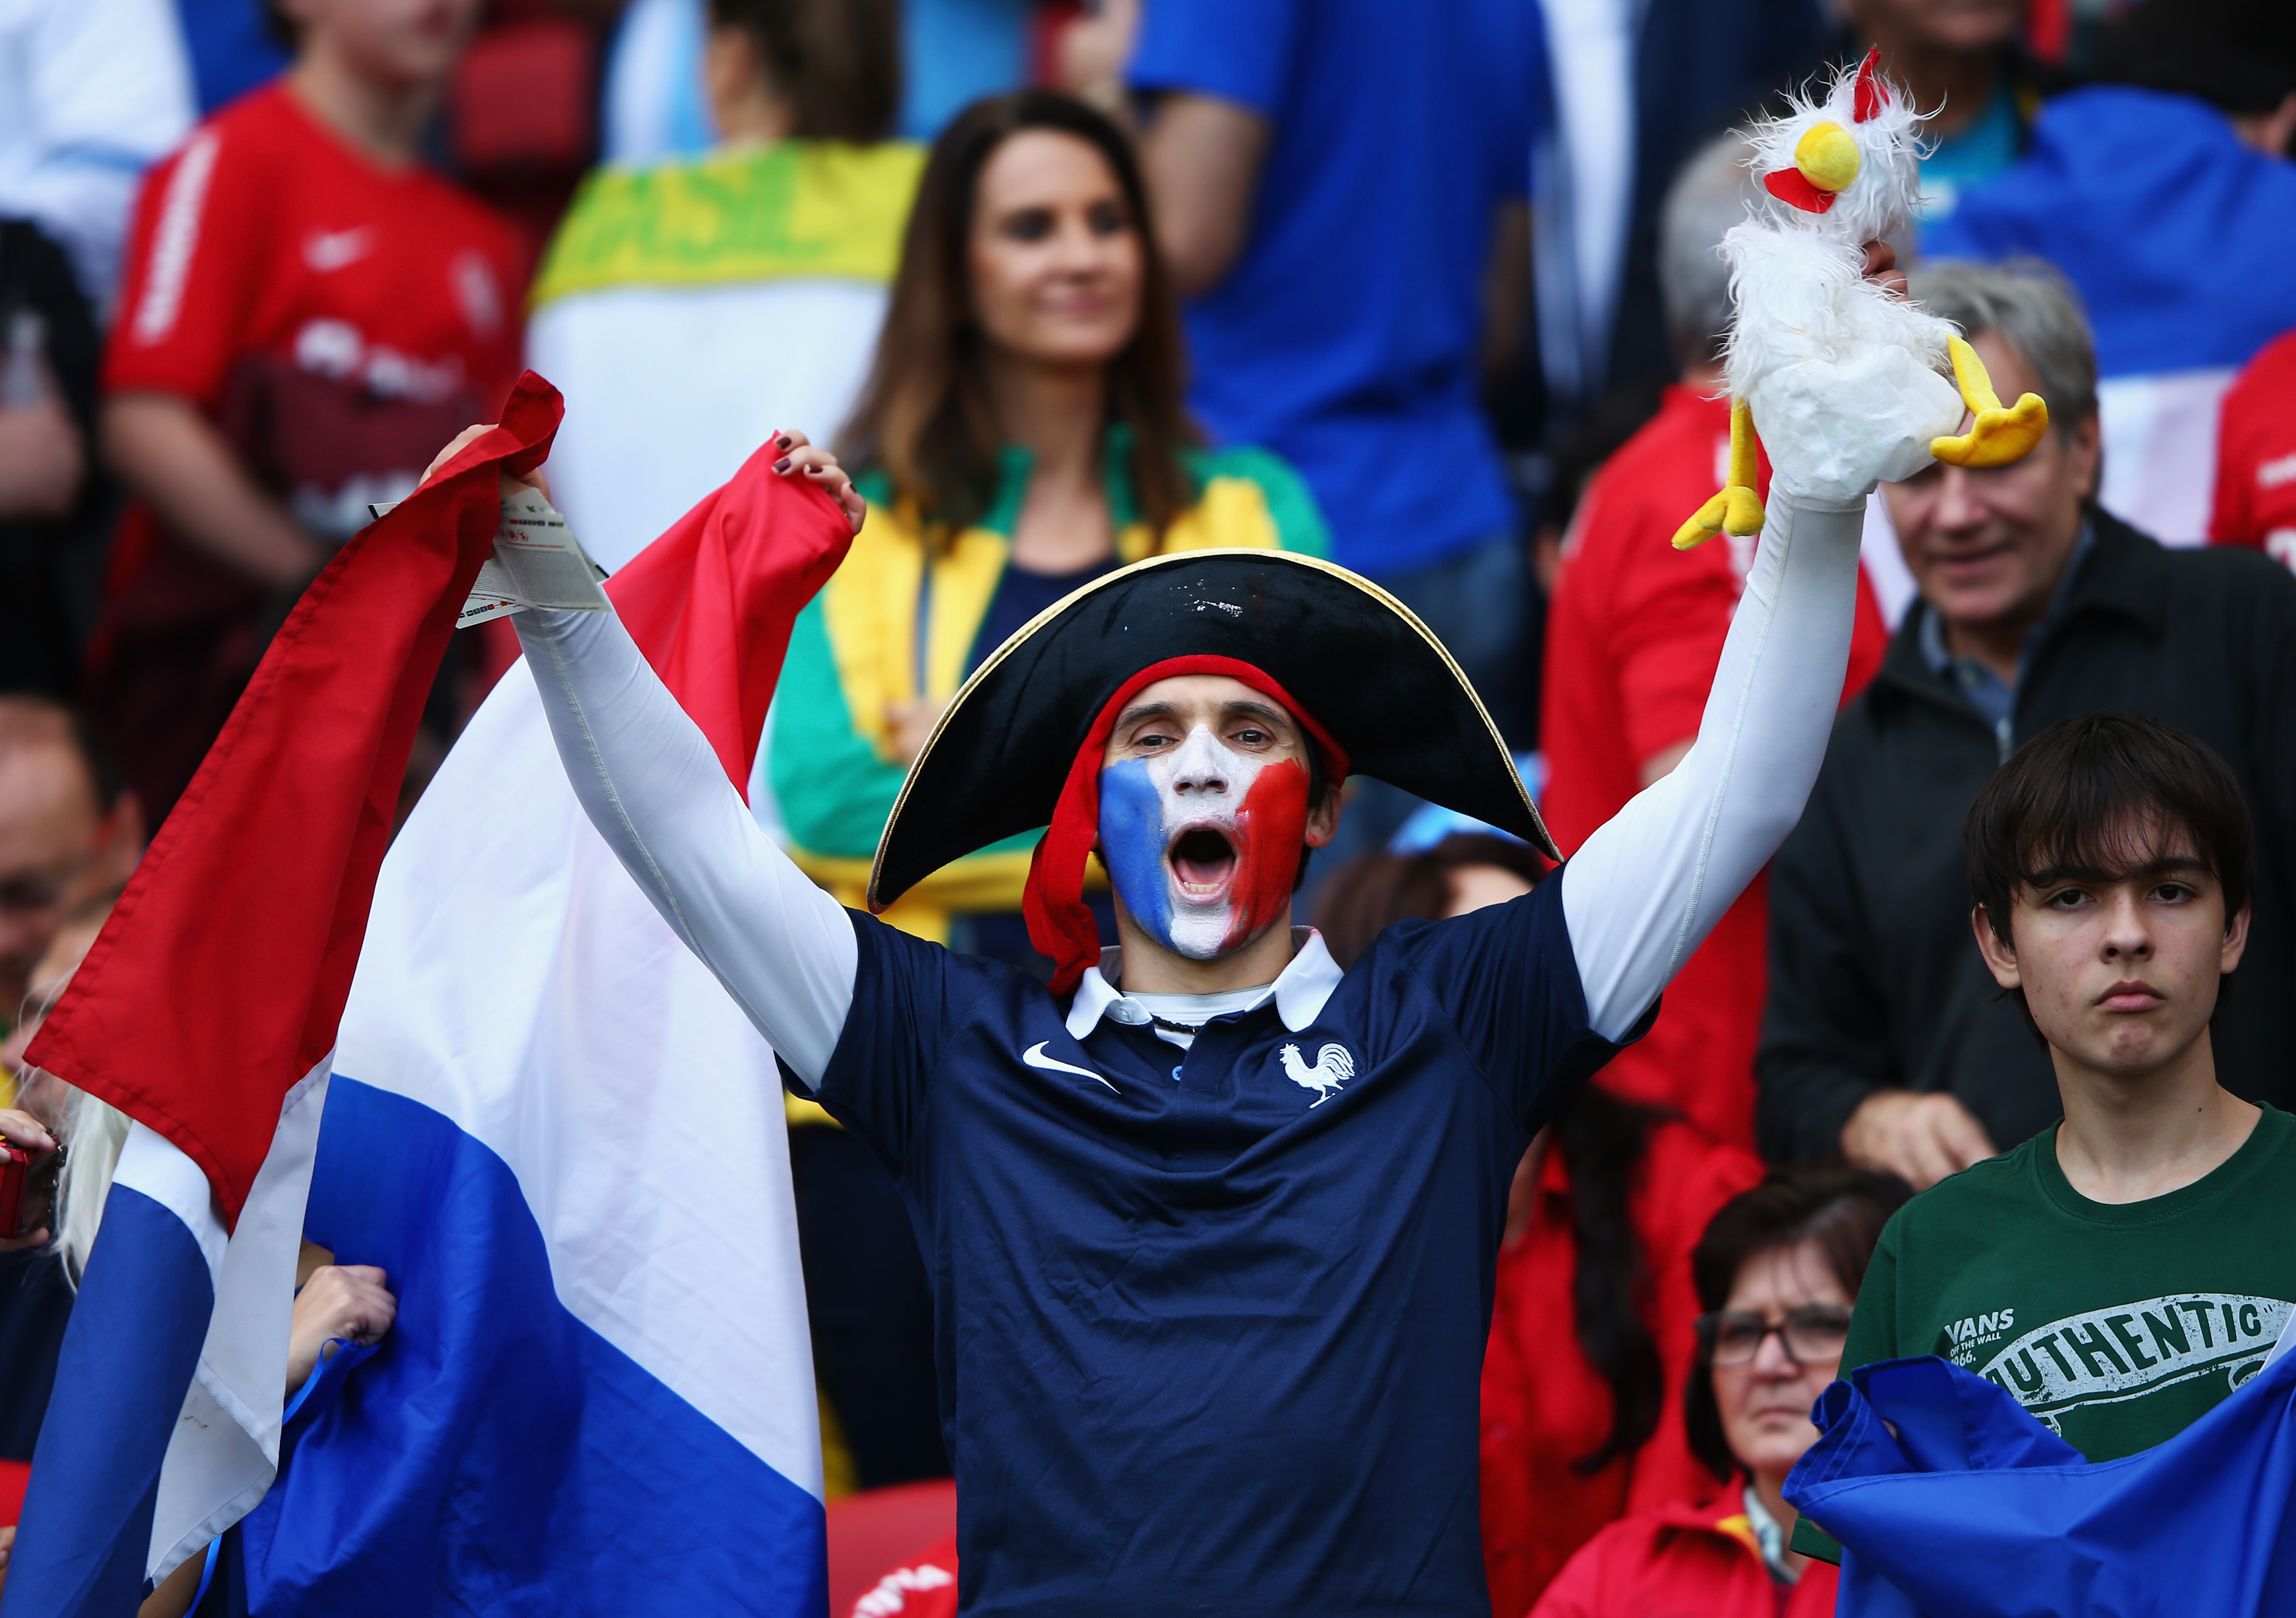 Kde byly hymny? zlobili se francouzští fotbalisté. Pořadatelům selhal audiosystém…